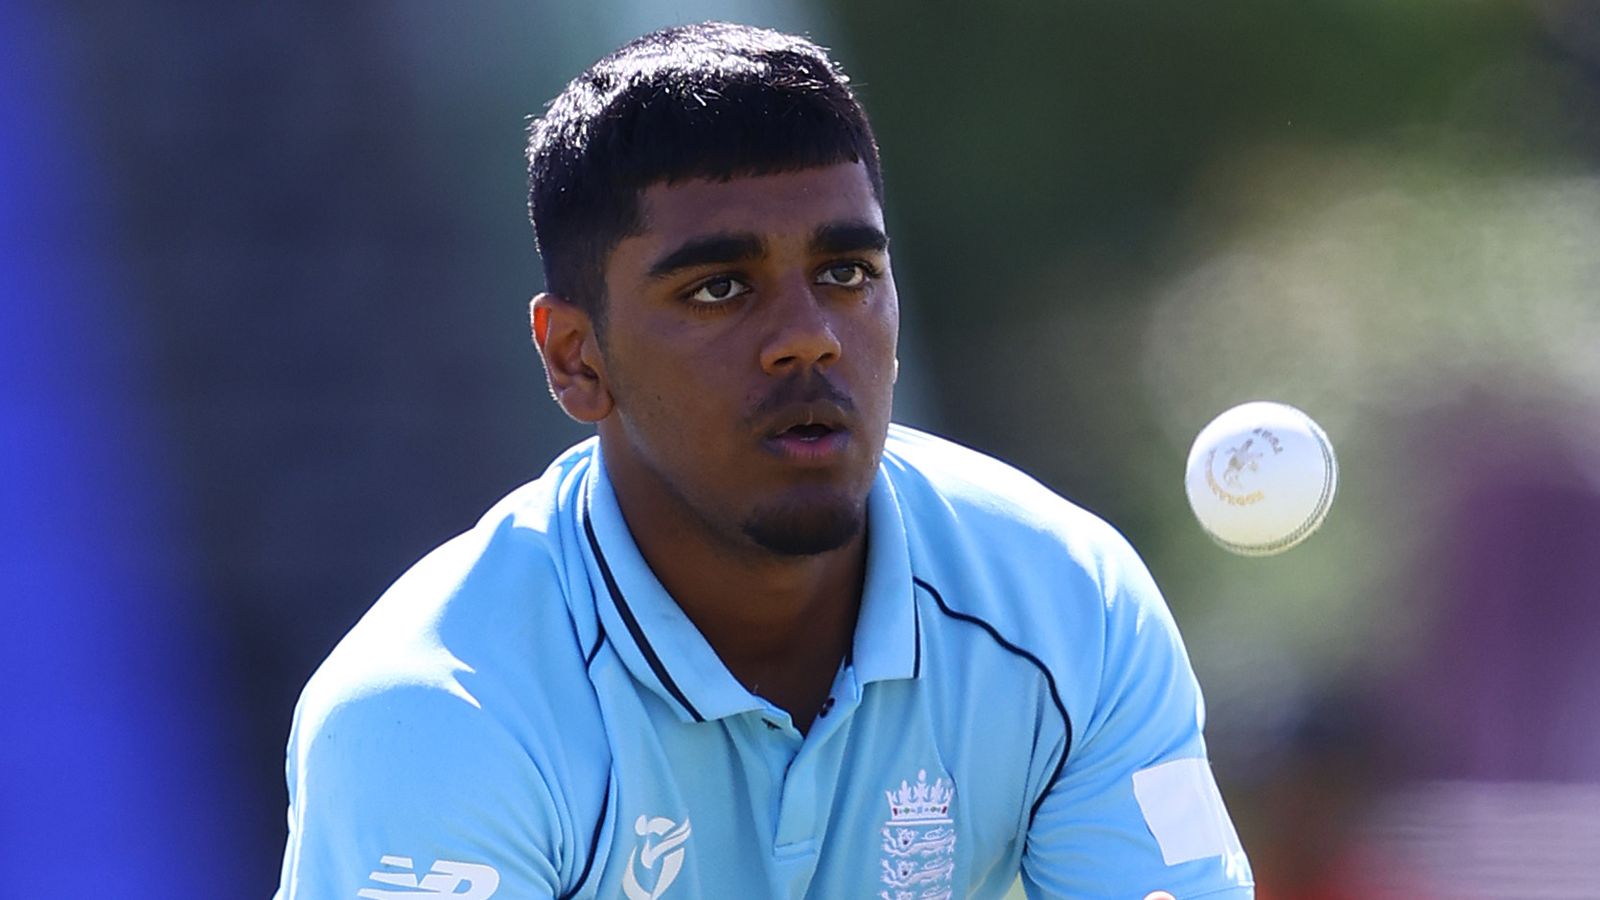 Lions d’Angleterre : l’adolescent Rehan Ahmed nommé dans l’équipe de 15 joueurs ;  Jofra Archer se rendra aux EAU |  Nouvelles du cricket